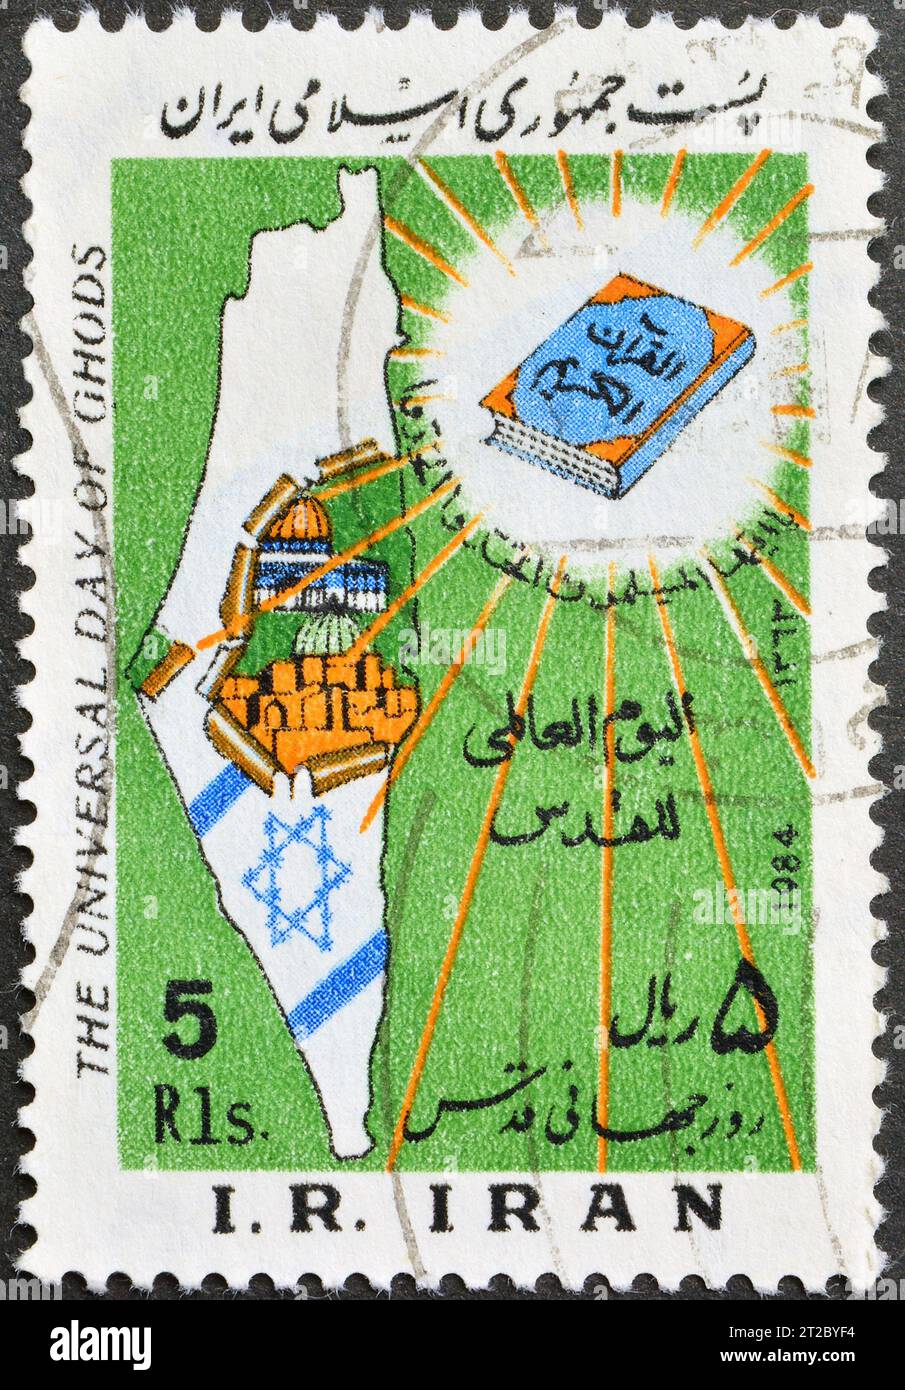 Gestempelte Briefmarke, gedruckt vom Iran, auf der Karte Israels, Quran, Jerusalem-Tag; Fetr-Festival (Ende des Ramadan), um 1984 zu sehen ist. Stockfoto